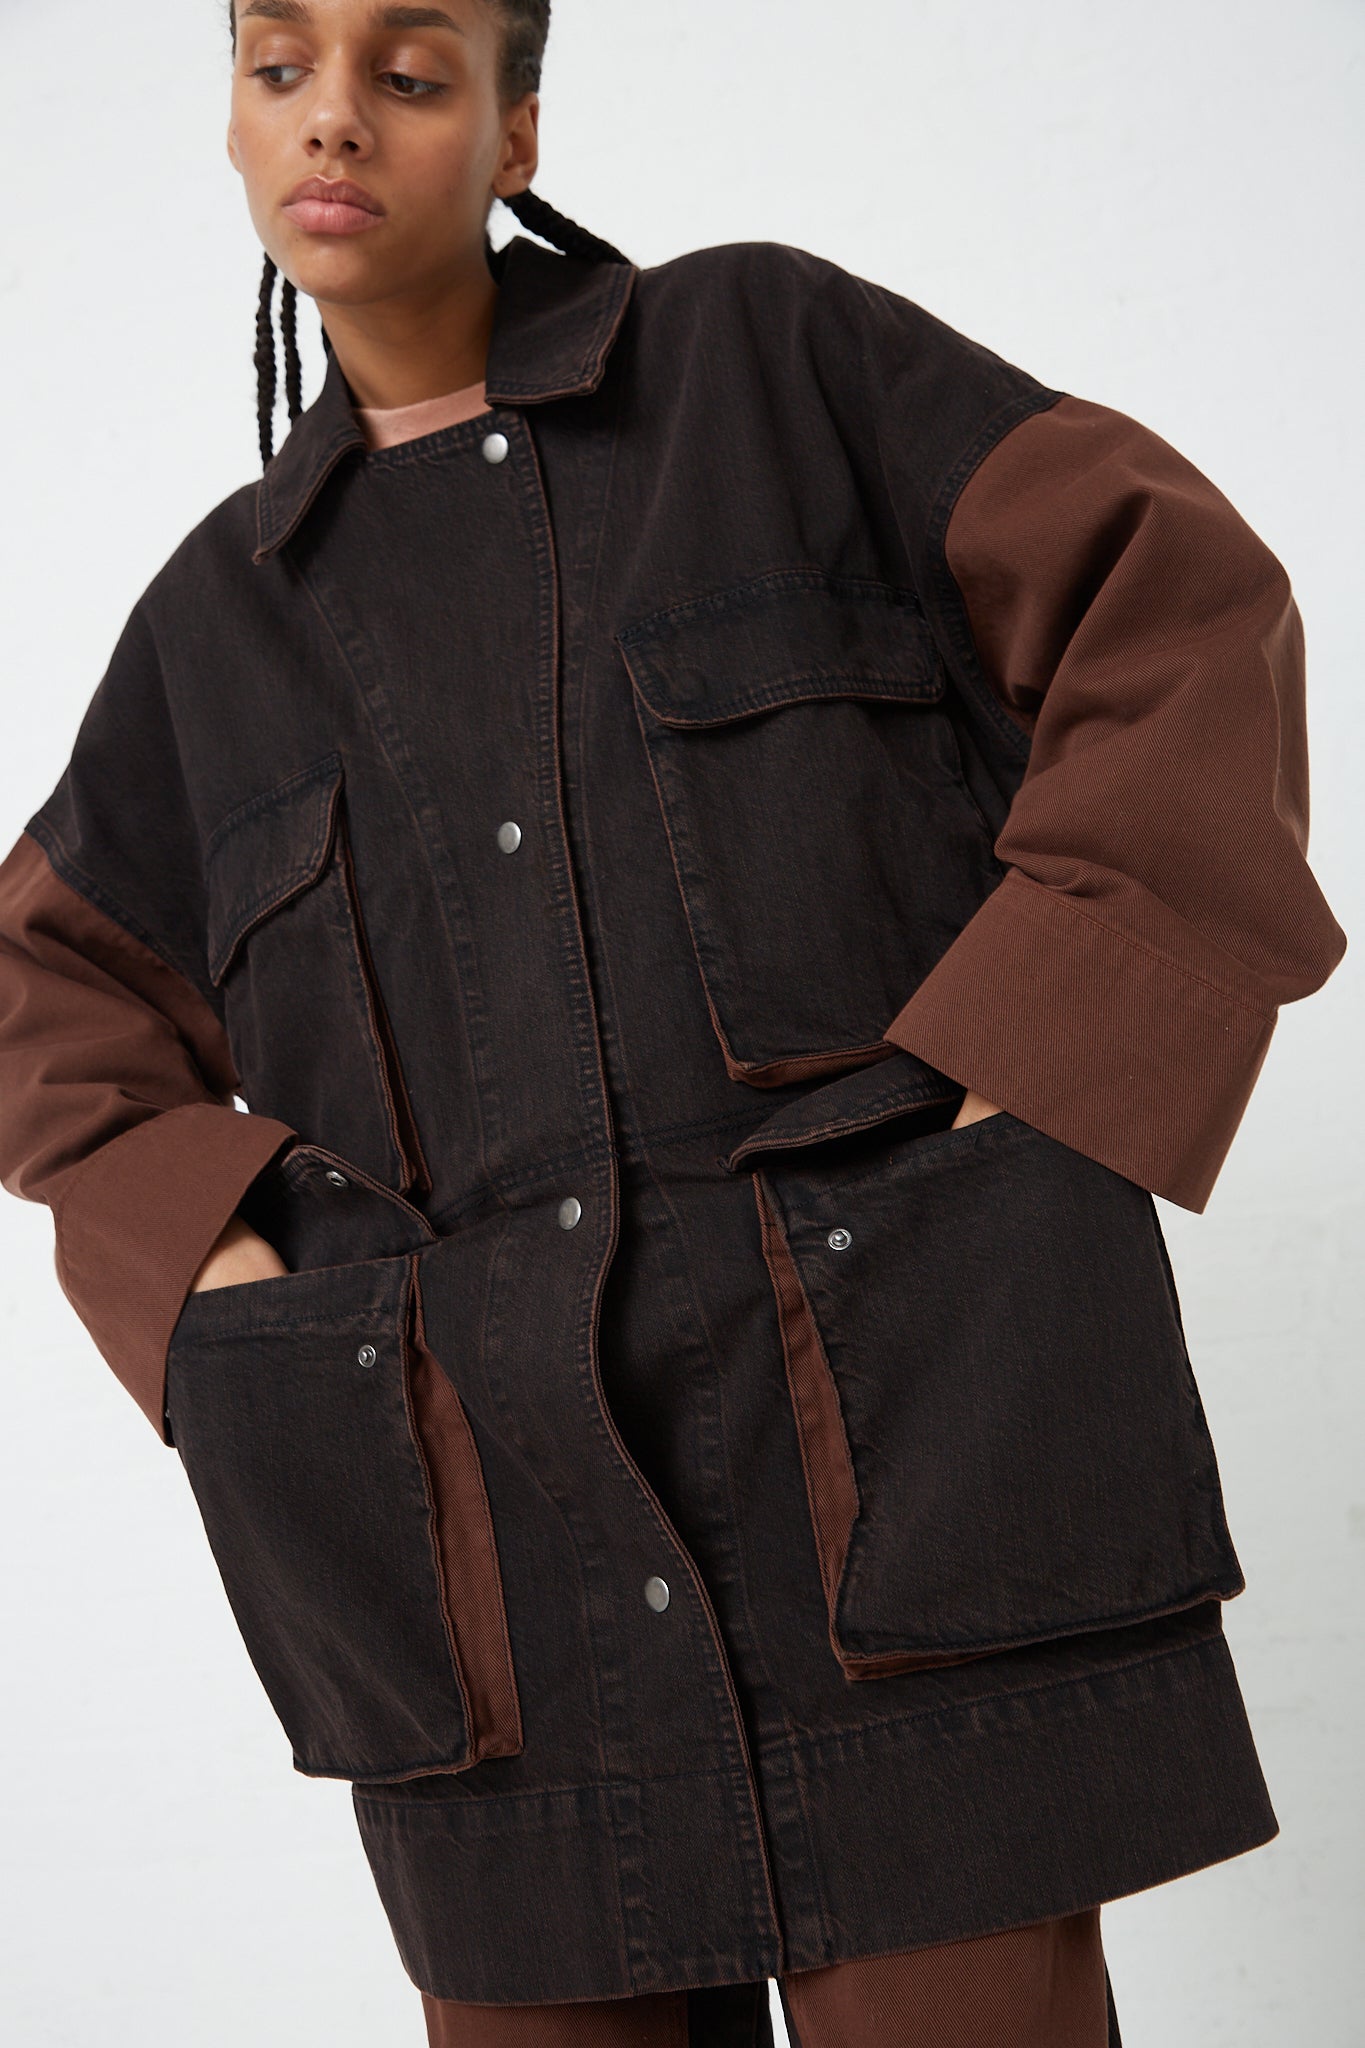 The model is wearing a Denim Celeiro Jacket in Chestnut by Rachel Comey.